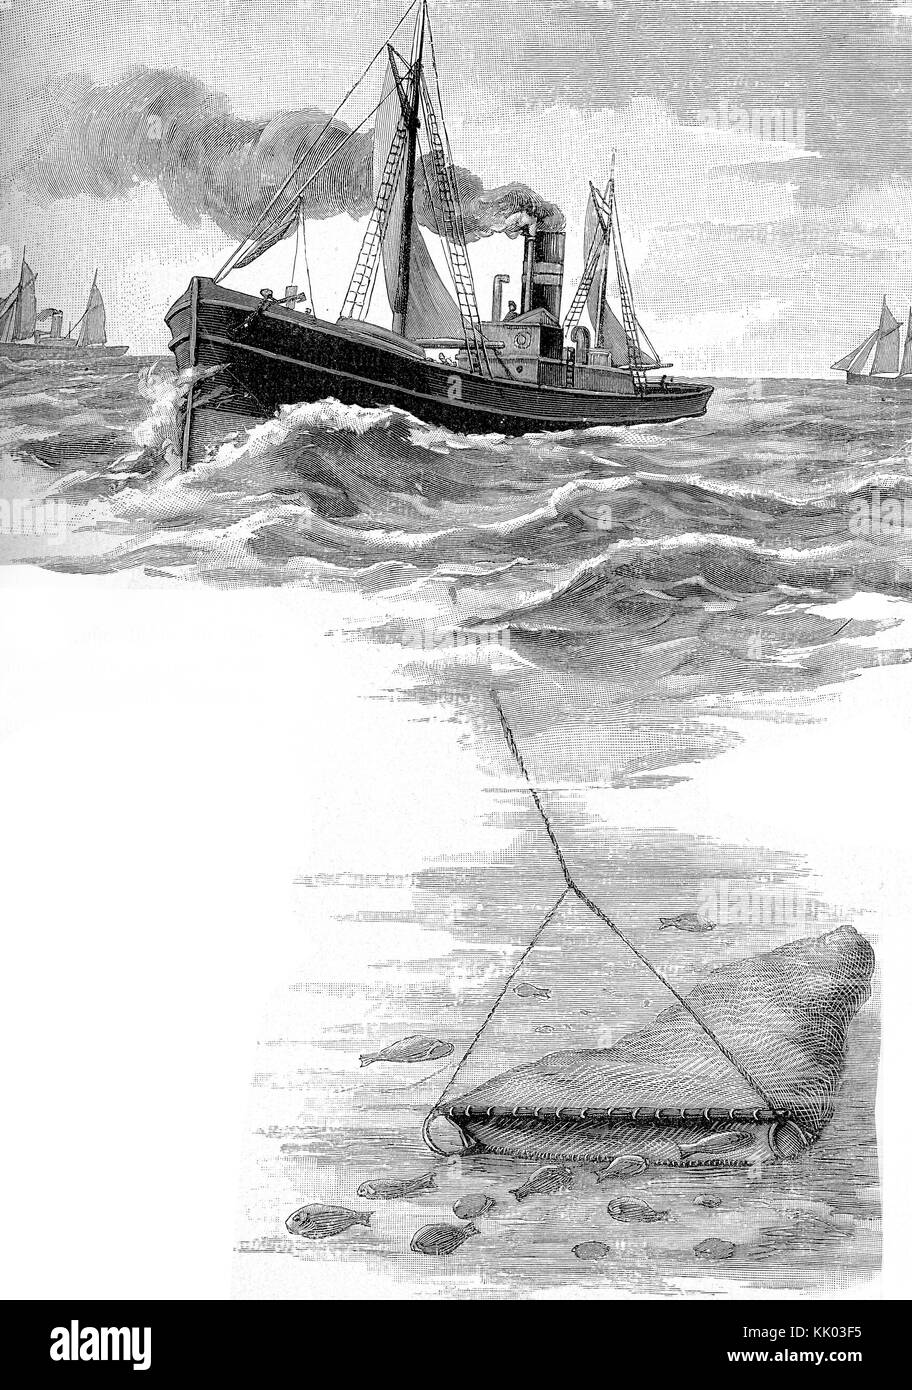 Bateau à vapeur de pêche de la mer du Nord avec un grand dragnet profond sous l'eau, gravure vintage Banque D'Images